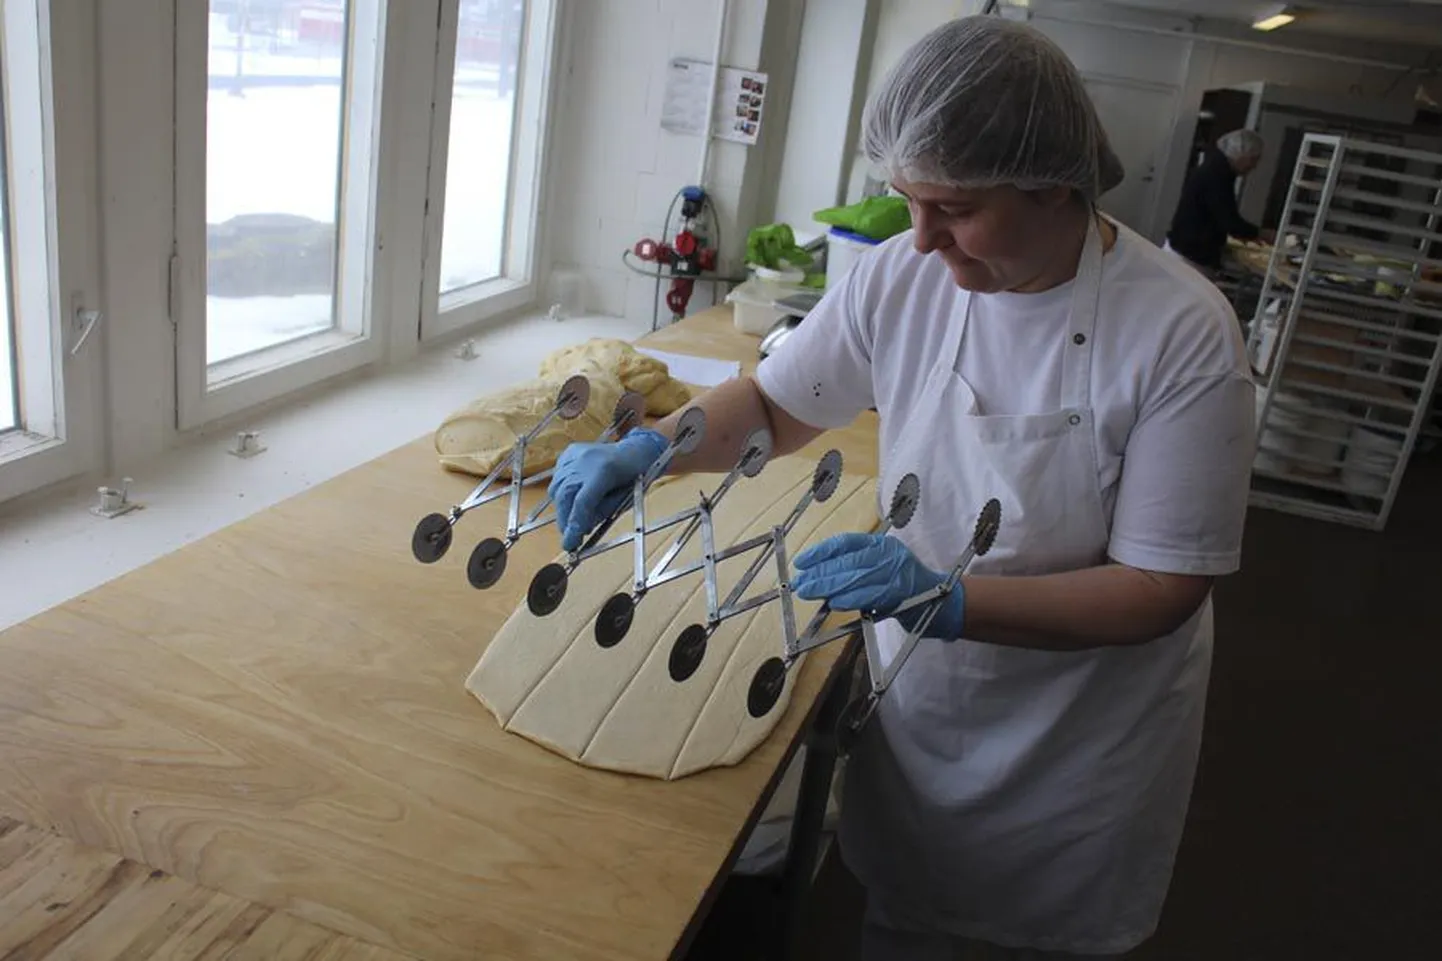 Ühemehefirmana alustanud Viiratsi Pagari uues tootmiskohas Viljandis Raua tänaval teeb praegu pagari- ja kondiitritööd kümmekond naist.